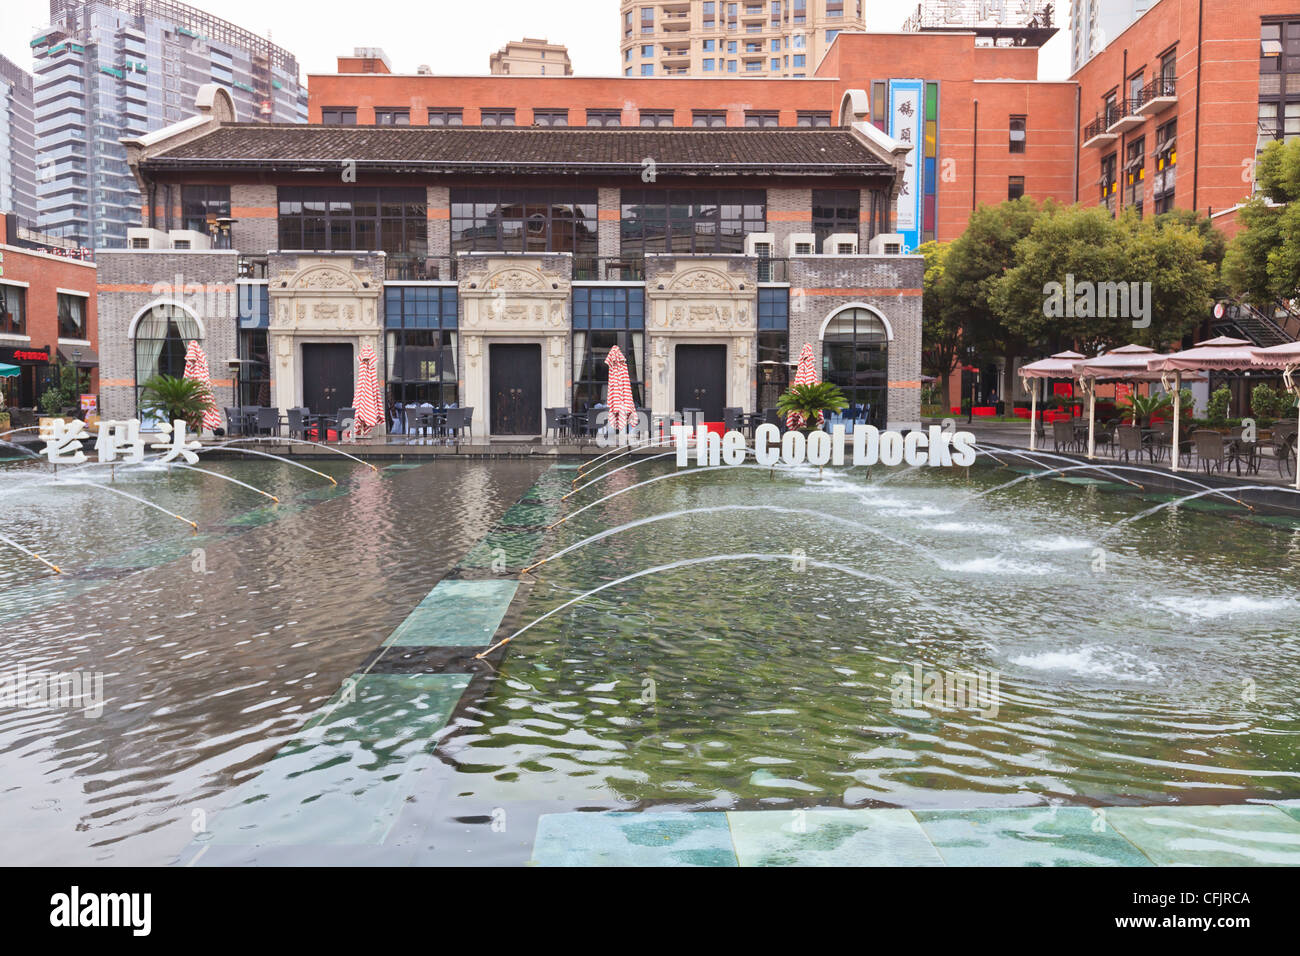 Die Cool Docks, Dockside Altbauten neu entwickelt als eine gehobene Restaurantviertel südlich von Bund, Shanghai, China, Asien Stockfoto